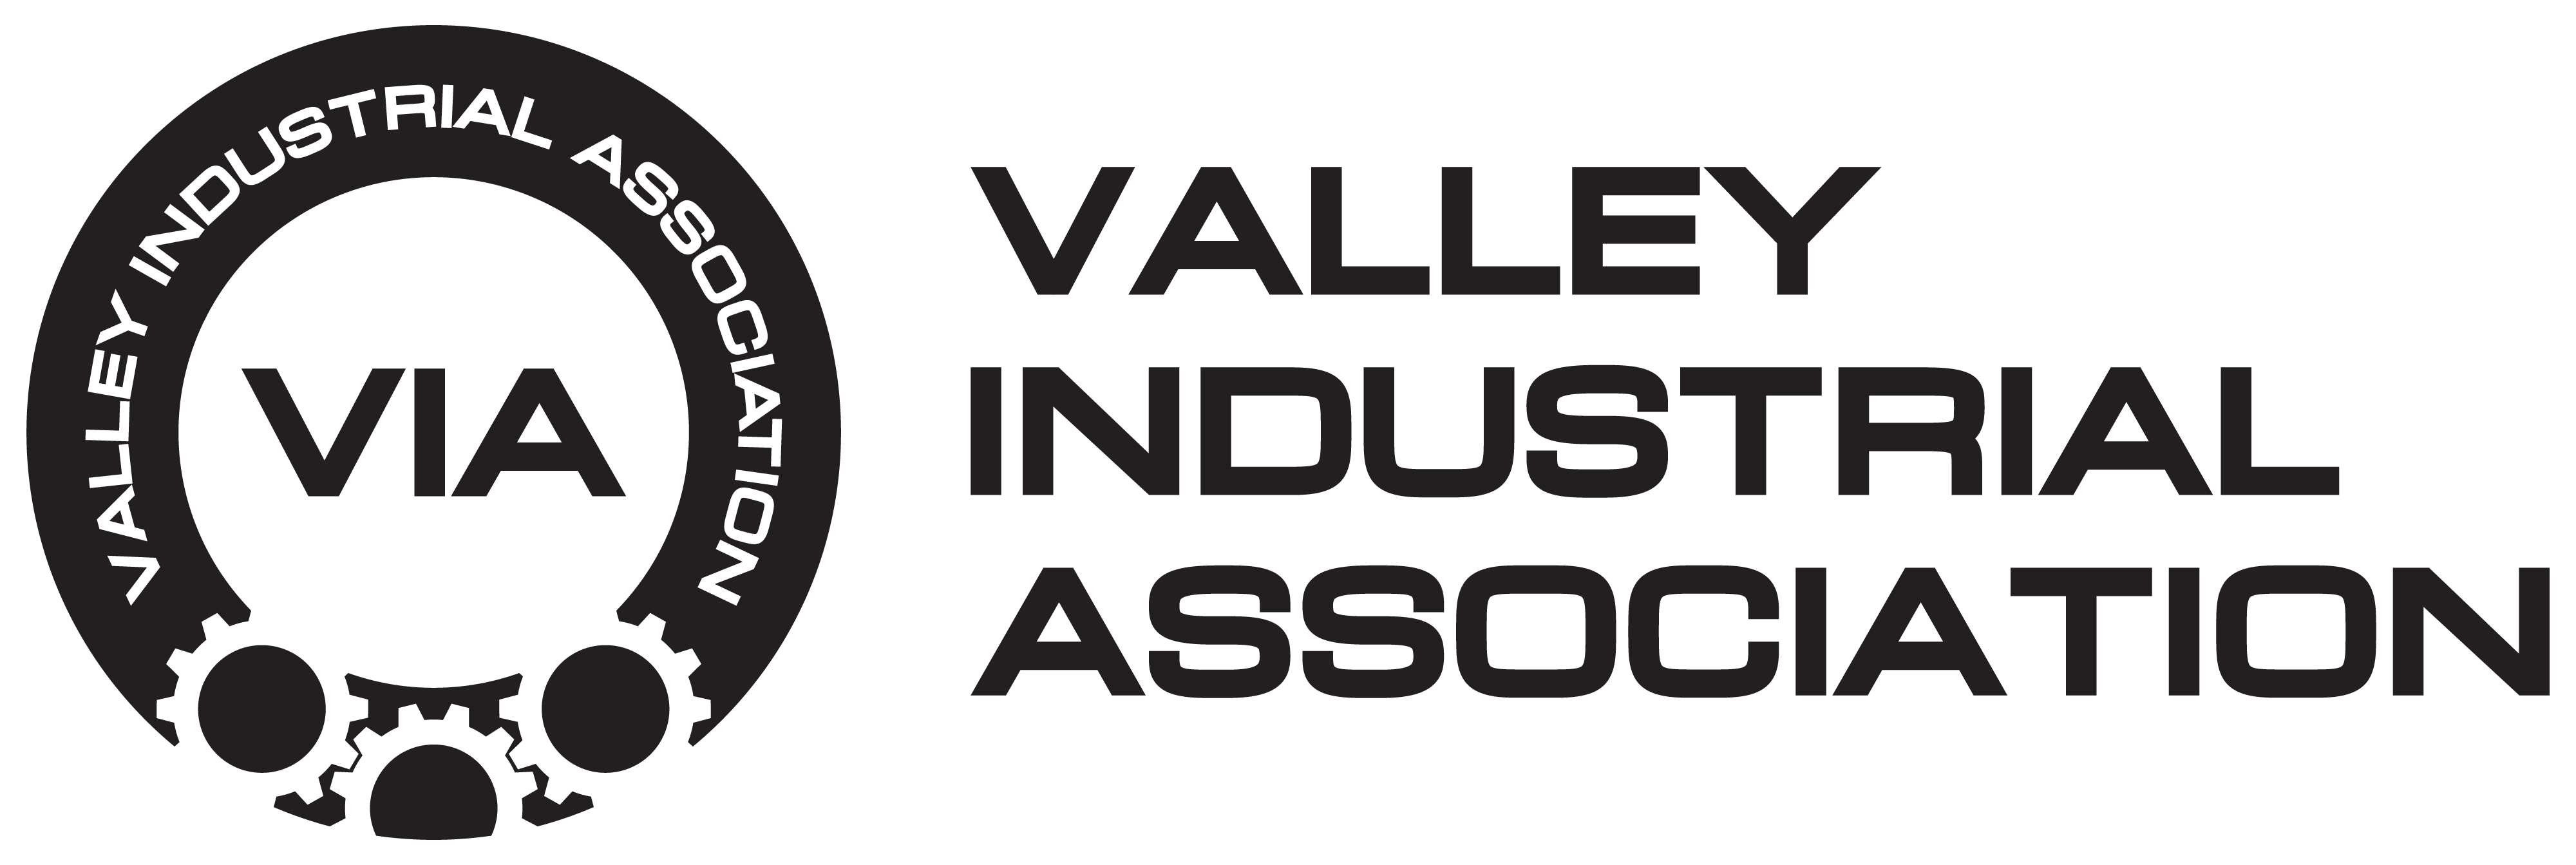 Valley Industrial Association 